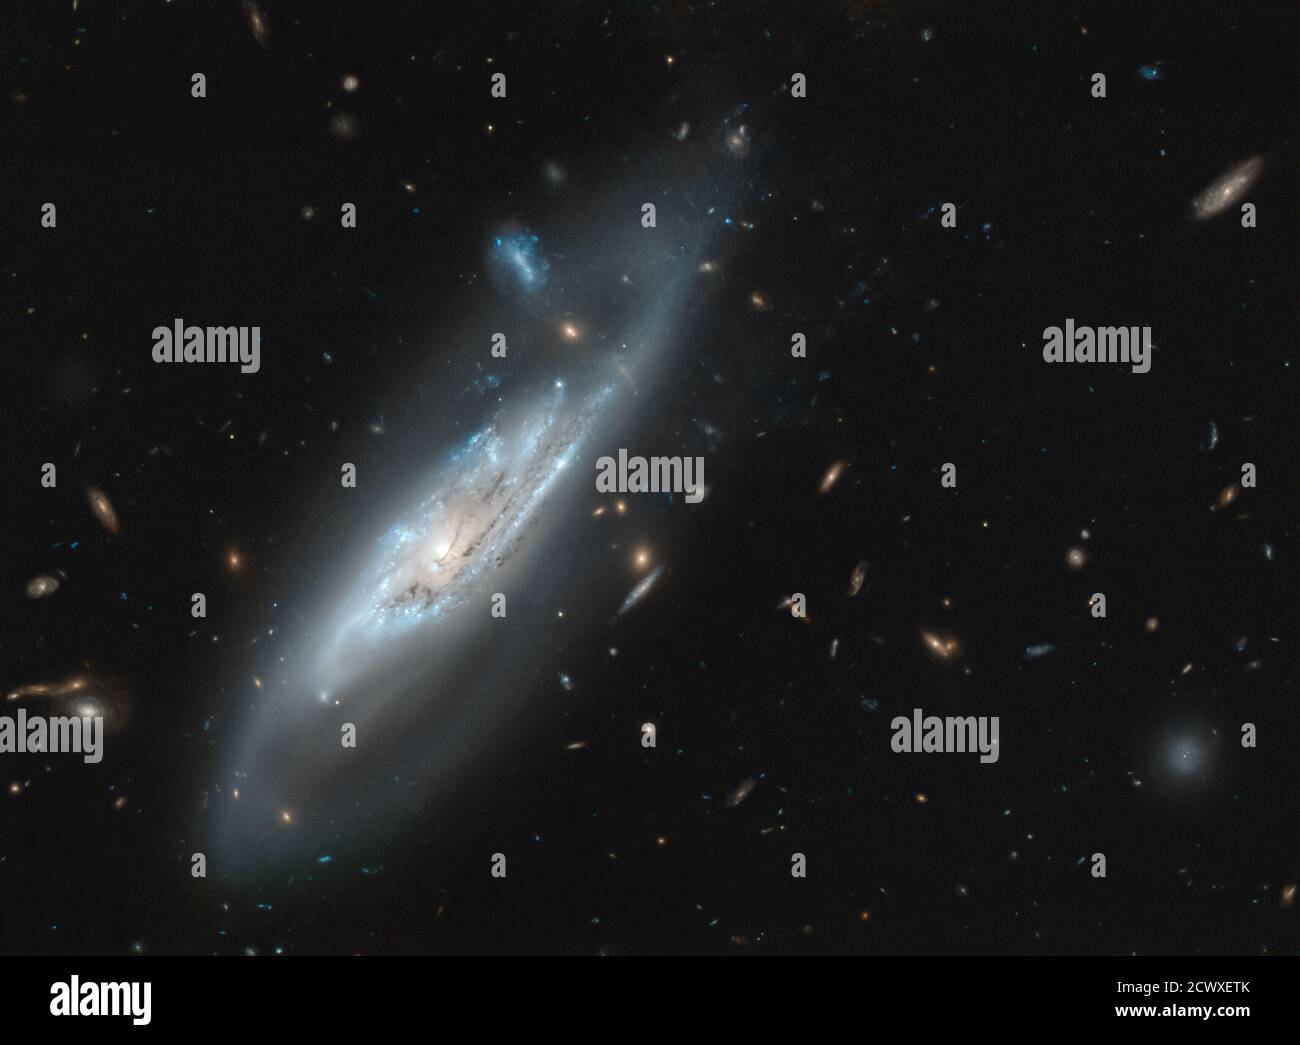 Geistergalaxie NGC 4848 EIN bemerkenswertes Merkmal der meisten Spiralgalaxien ist die Vielzahl von gebogenen Spiralarmen, die sich scheinbar aus dem Zentrum der Galaxie ausspinnen. In diesem Bild, aufgenommen mit dem NASA/ESA Hubble Space Telescope, werden die atemberaubenden silbrig-blauen Spiralarme der Galaxie NGC 4848 in immenser Detailtiefe beobachtet. Wir sehen nicht nur den inneren Teil der Spiralarme mit hunderttausenden von jungen, hellen, blauen Sternen, sondern Hubble hat auch die extrem schwachen, wispy Schwänze der äußeren Spiralarme eingefangen. Im Hintergrund erscheinen Myriaden weiter entfernter und herrlich diverser Galaxien. Stockfoto